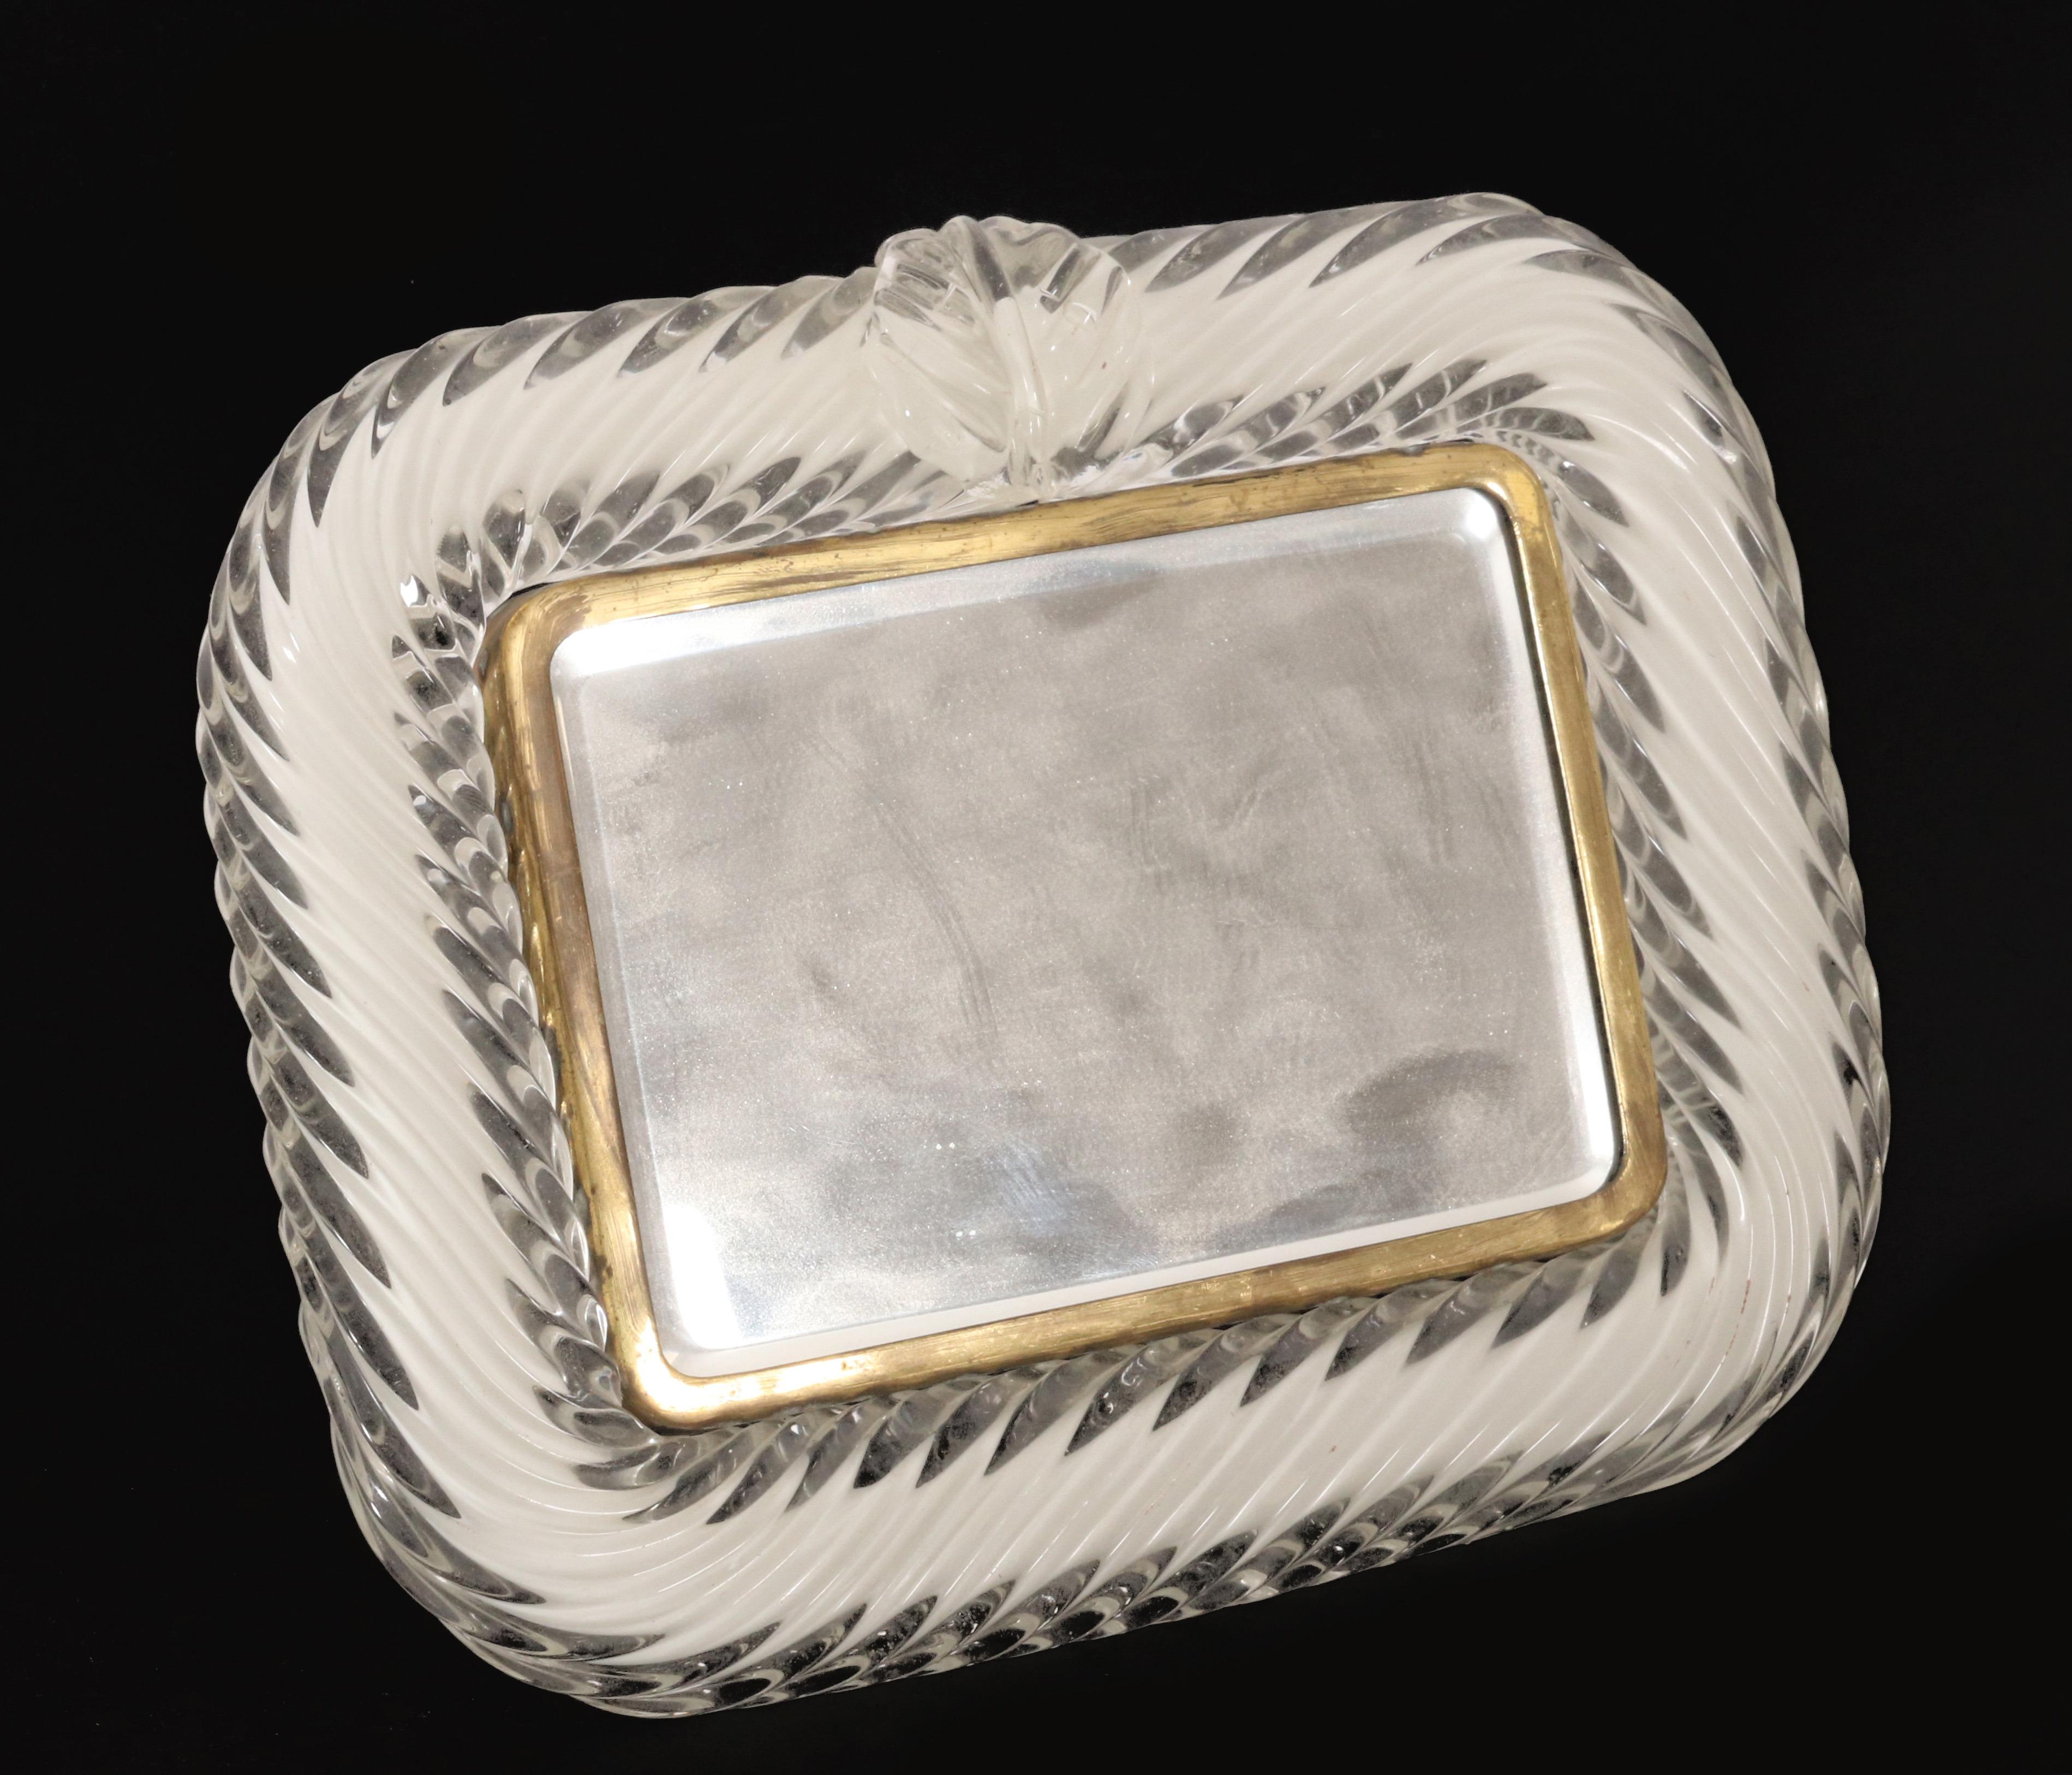 Ercol Barovier&Toso Miroir de table en verre de Murano. Ce superbe cadre de miroir Barovier&Toso des années 1940 présente un design captivant, avec un cadre en verre de Murano gracieusement torsadé, rehaussé de détails complexes en laiton. Le pied